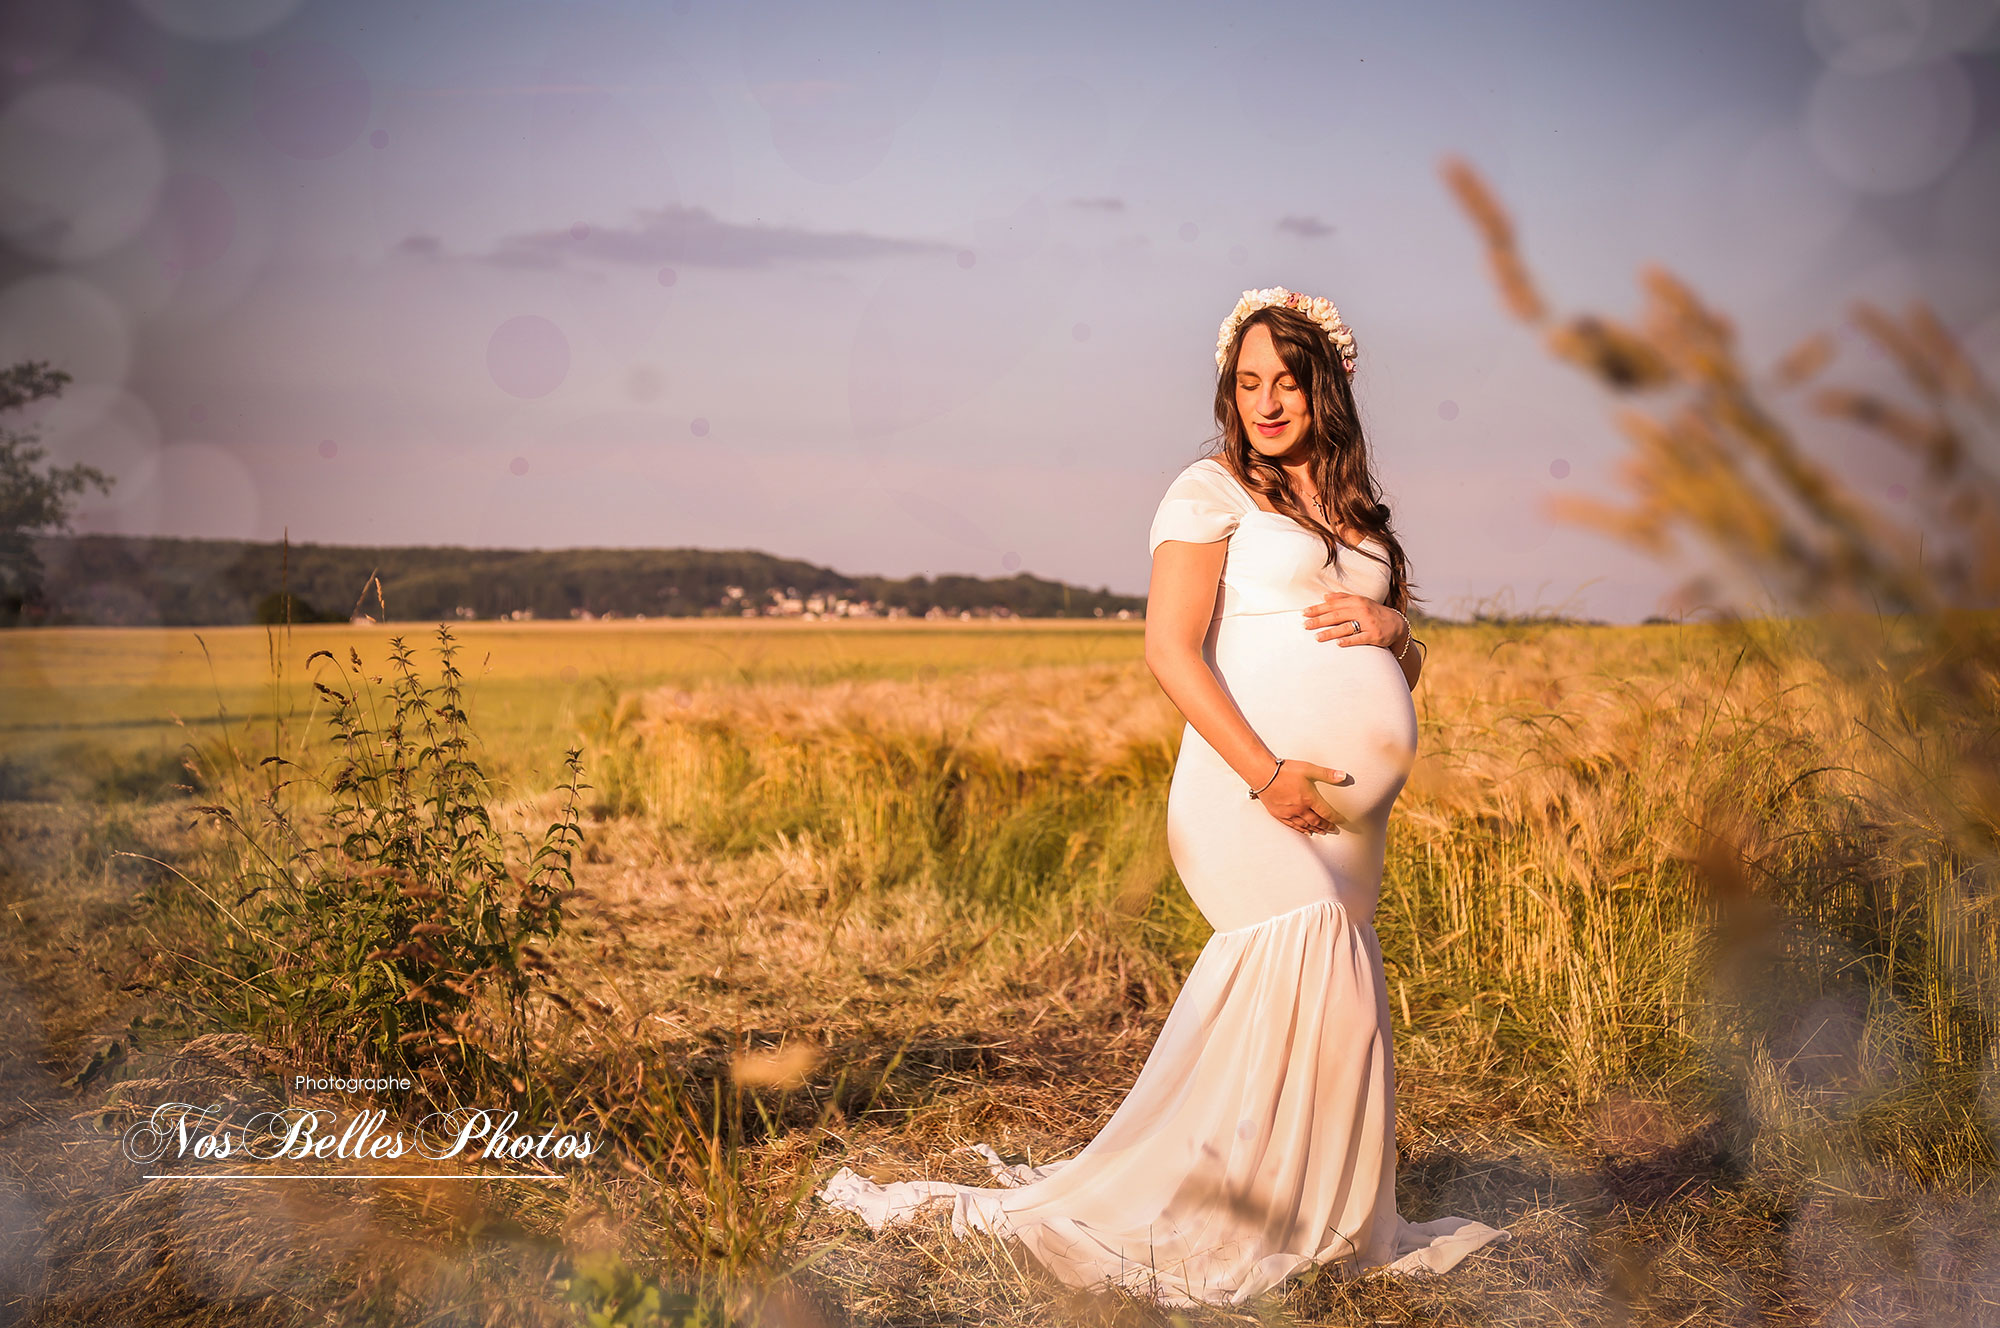 Photographe grossesse en Yvelines aux Mureaux, séance photo de grossesse en extérieur, shooting photo de grossesse en Yvelines